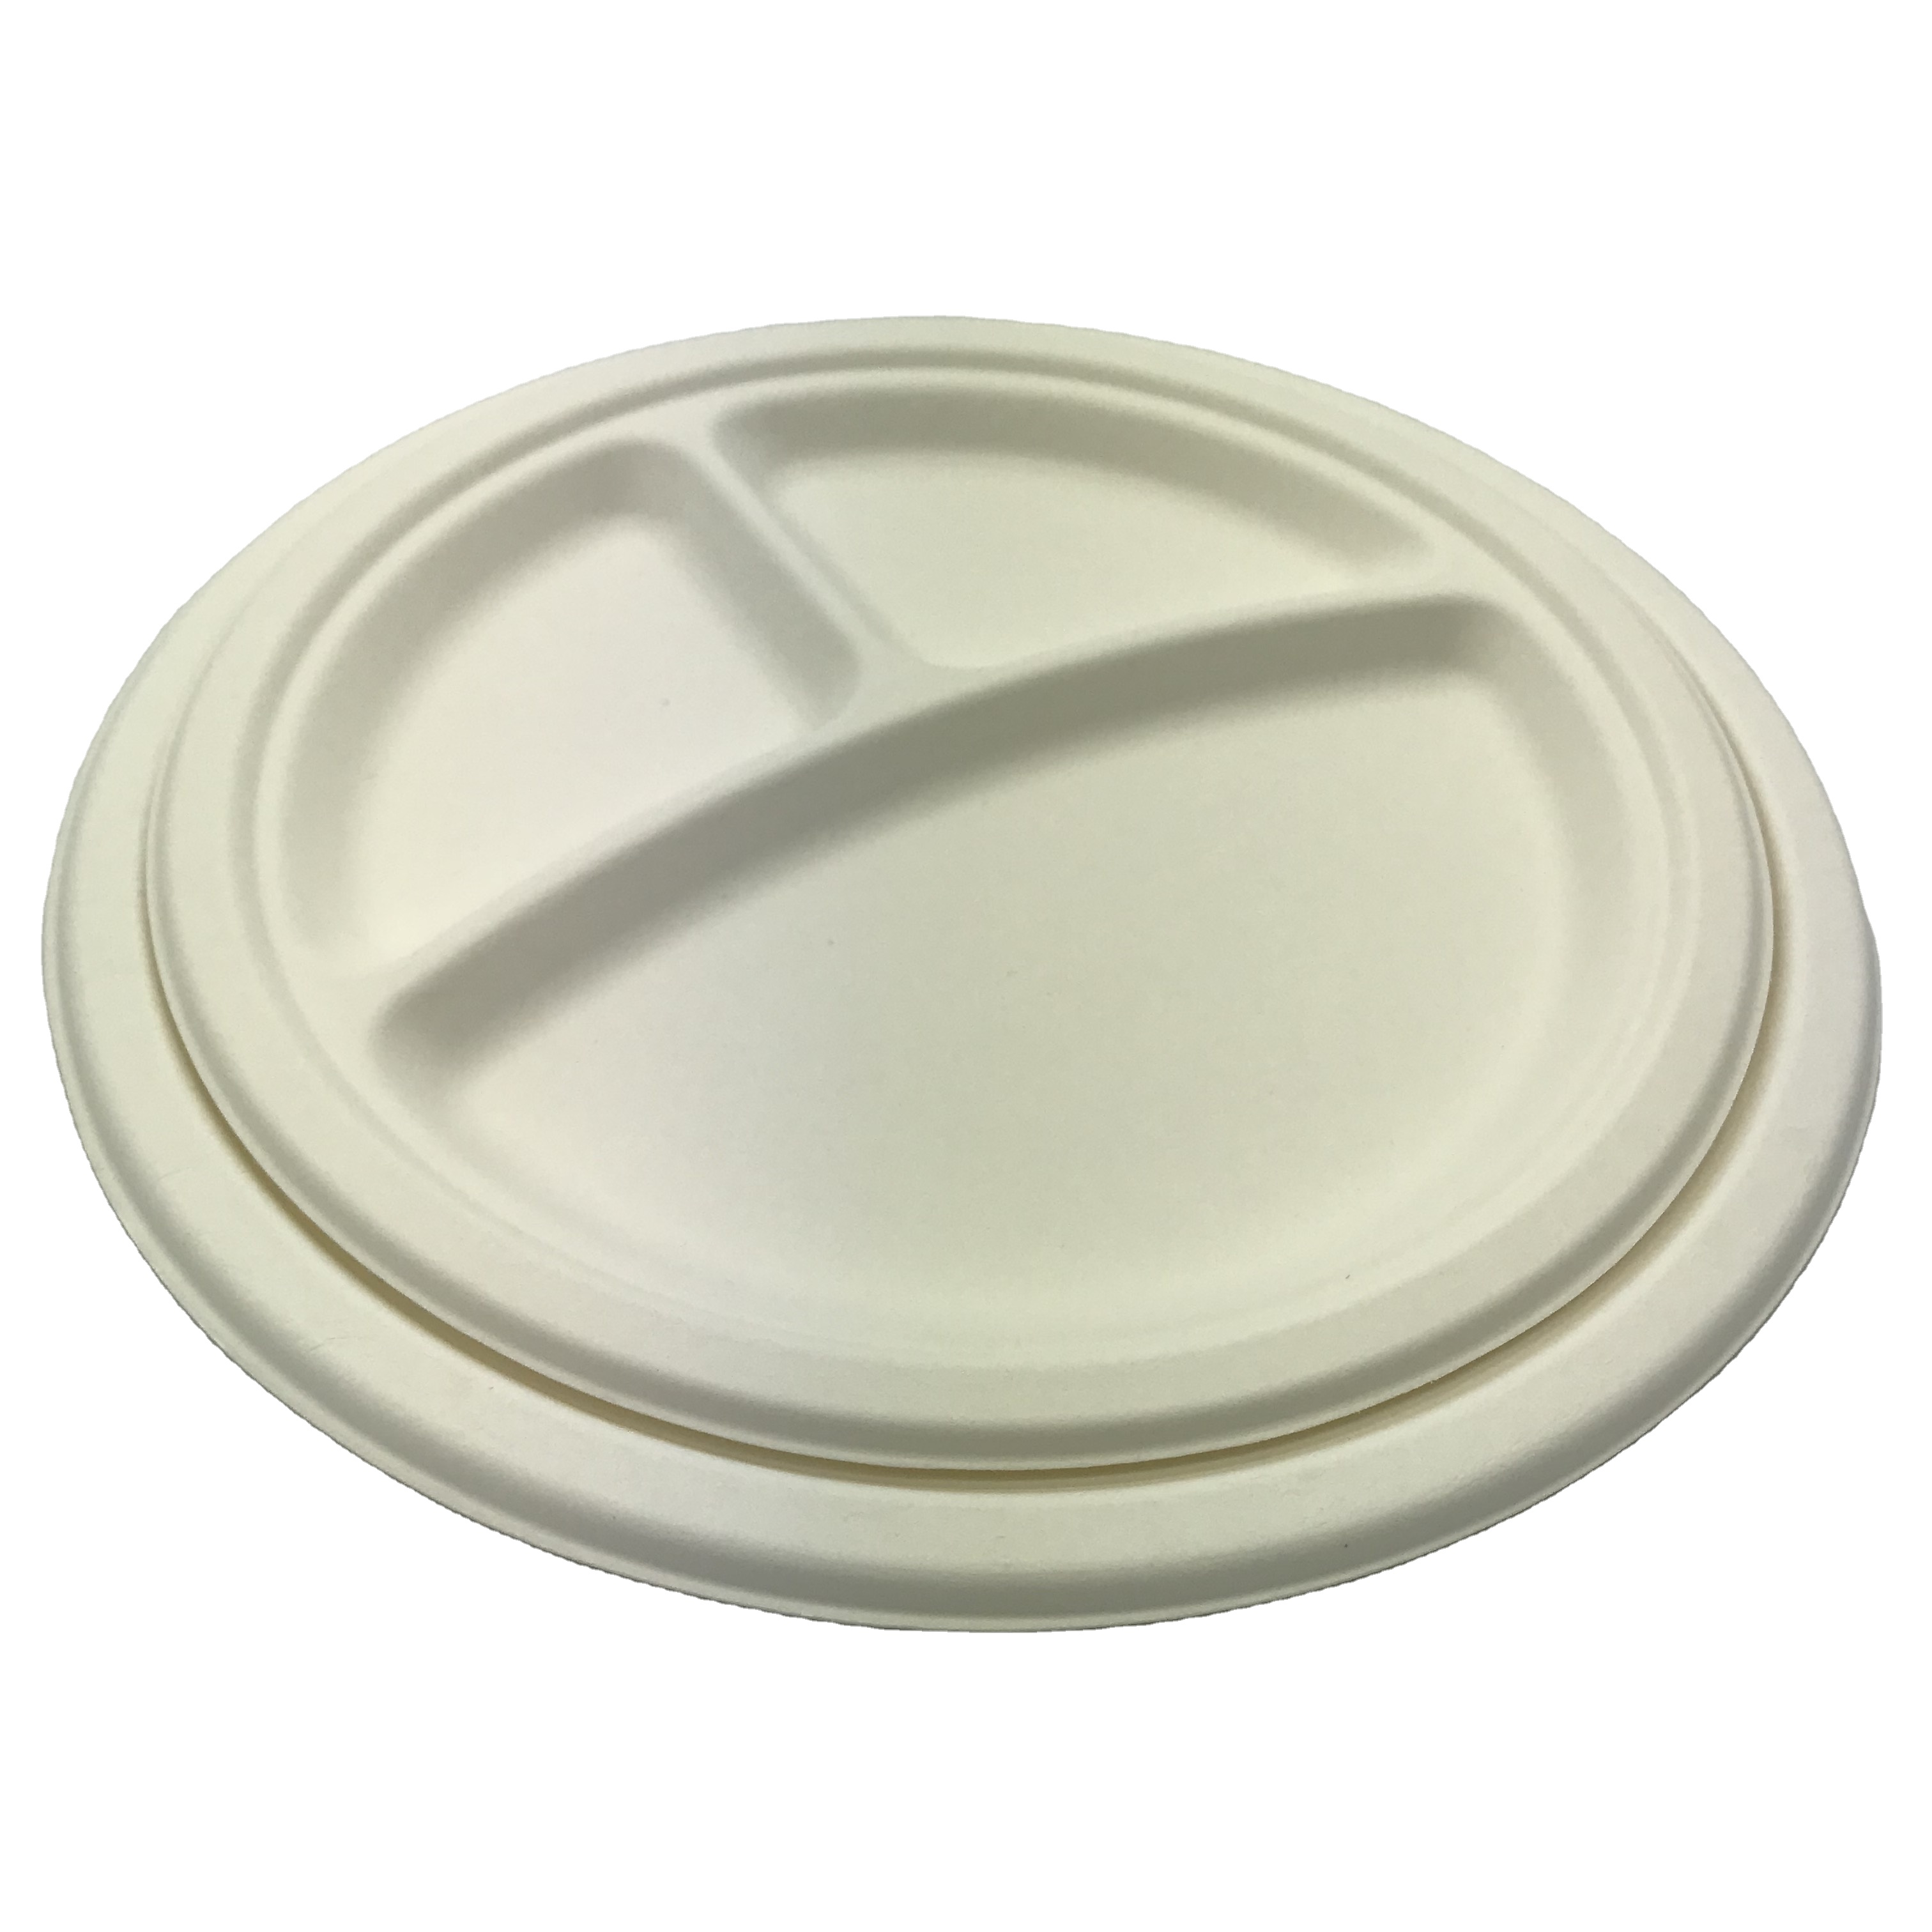 Styrofoam Plates - PFS SALES